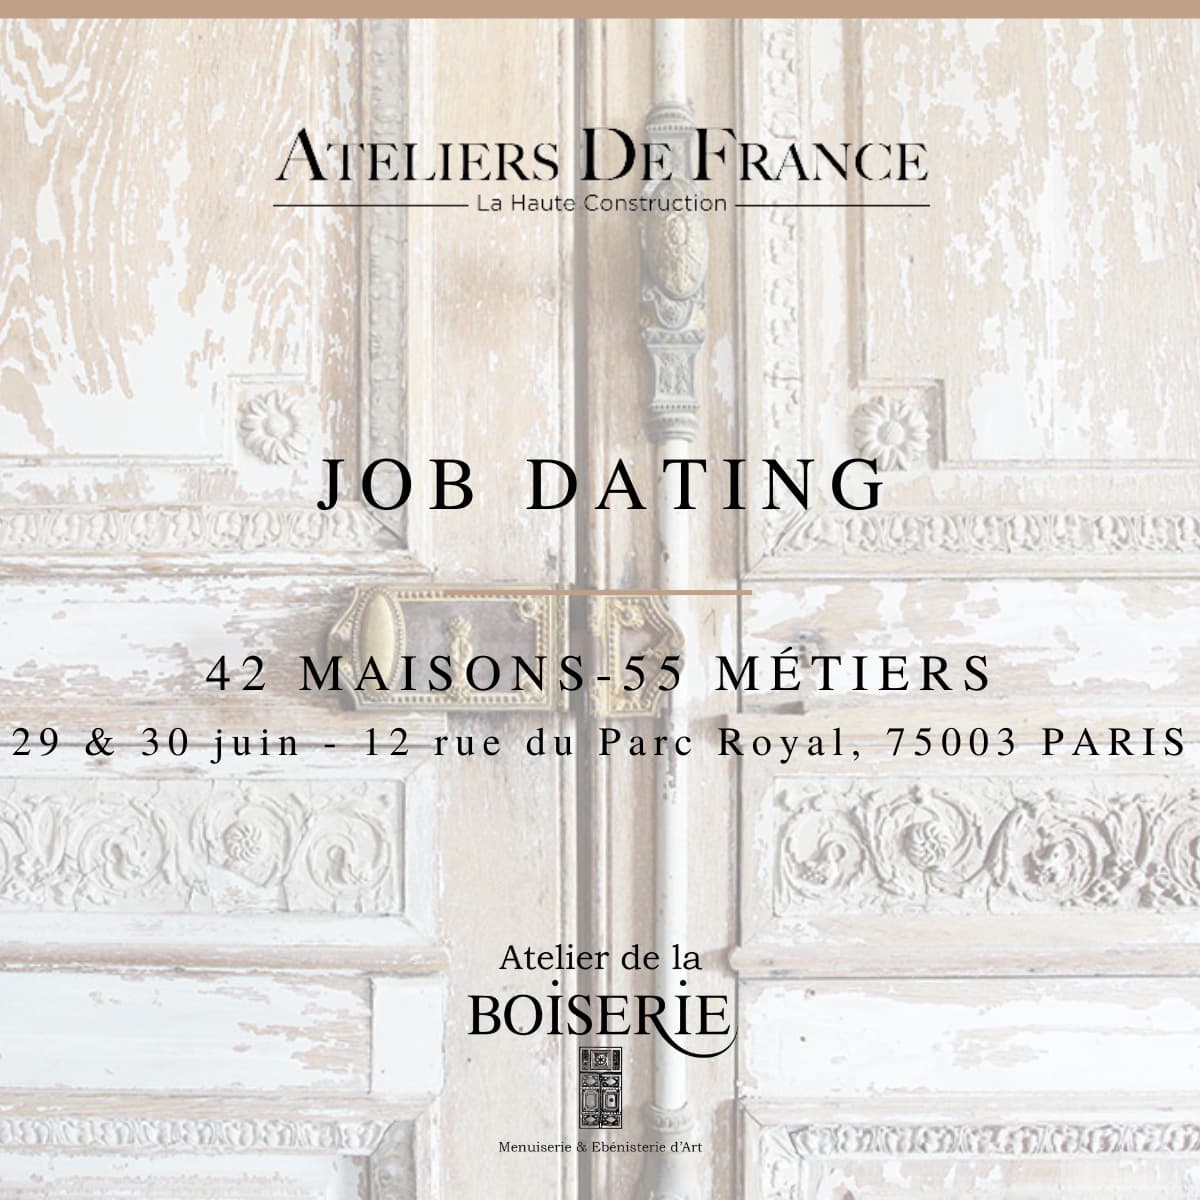 Atelier De France, Job Dating, Savoir-faire, Restauration, Ébéniste, bois, artisanat,France, Atelier de la Boiserie